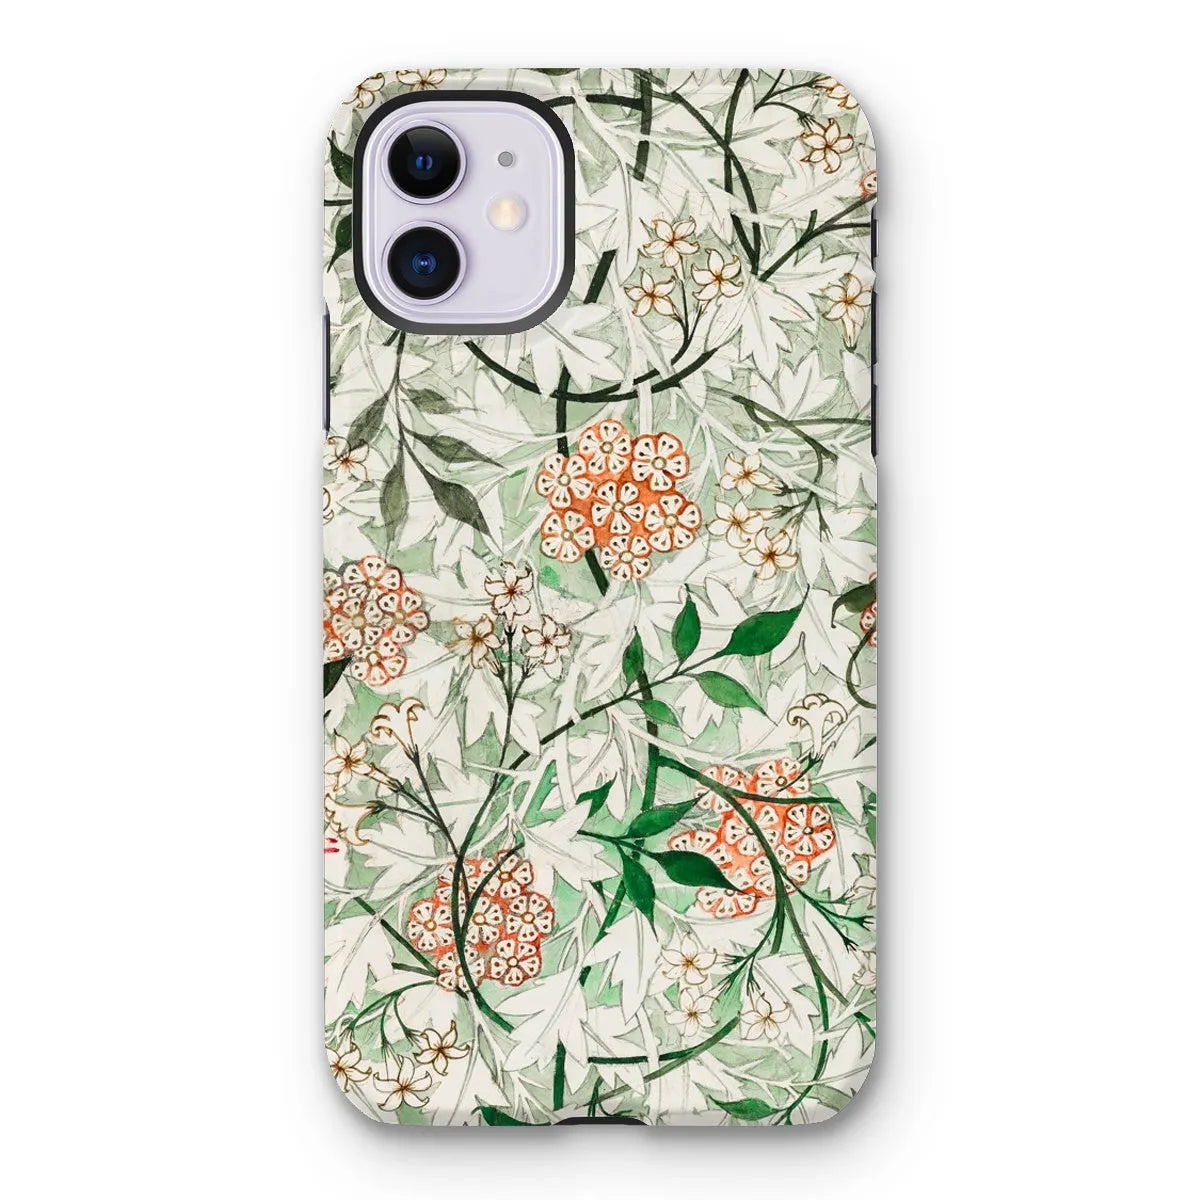 Jasmine Floral Aesthetic Art Phone Case - William Morris - Iphone 11 / Matte - Mobile Phone Cases - Aesthetic Art